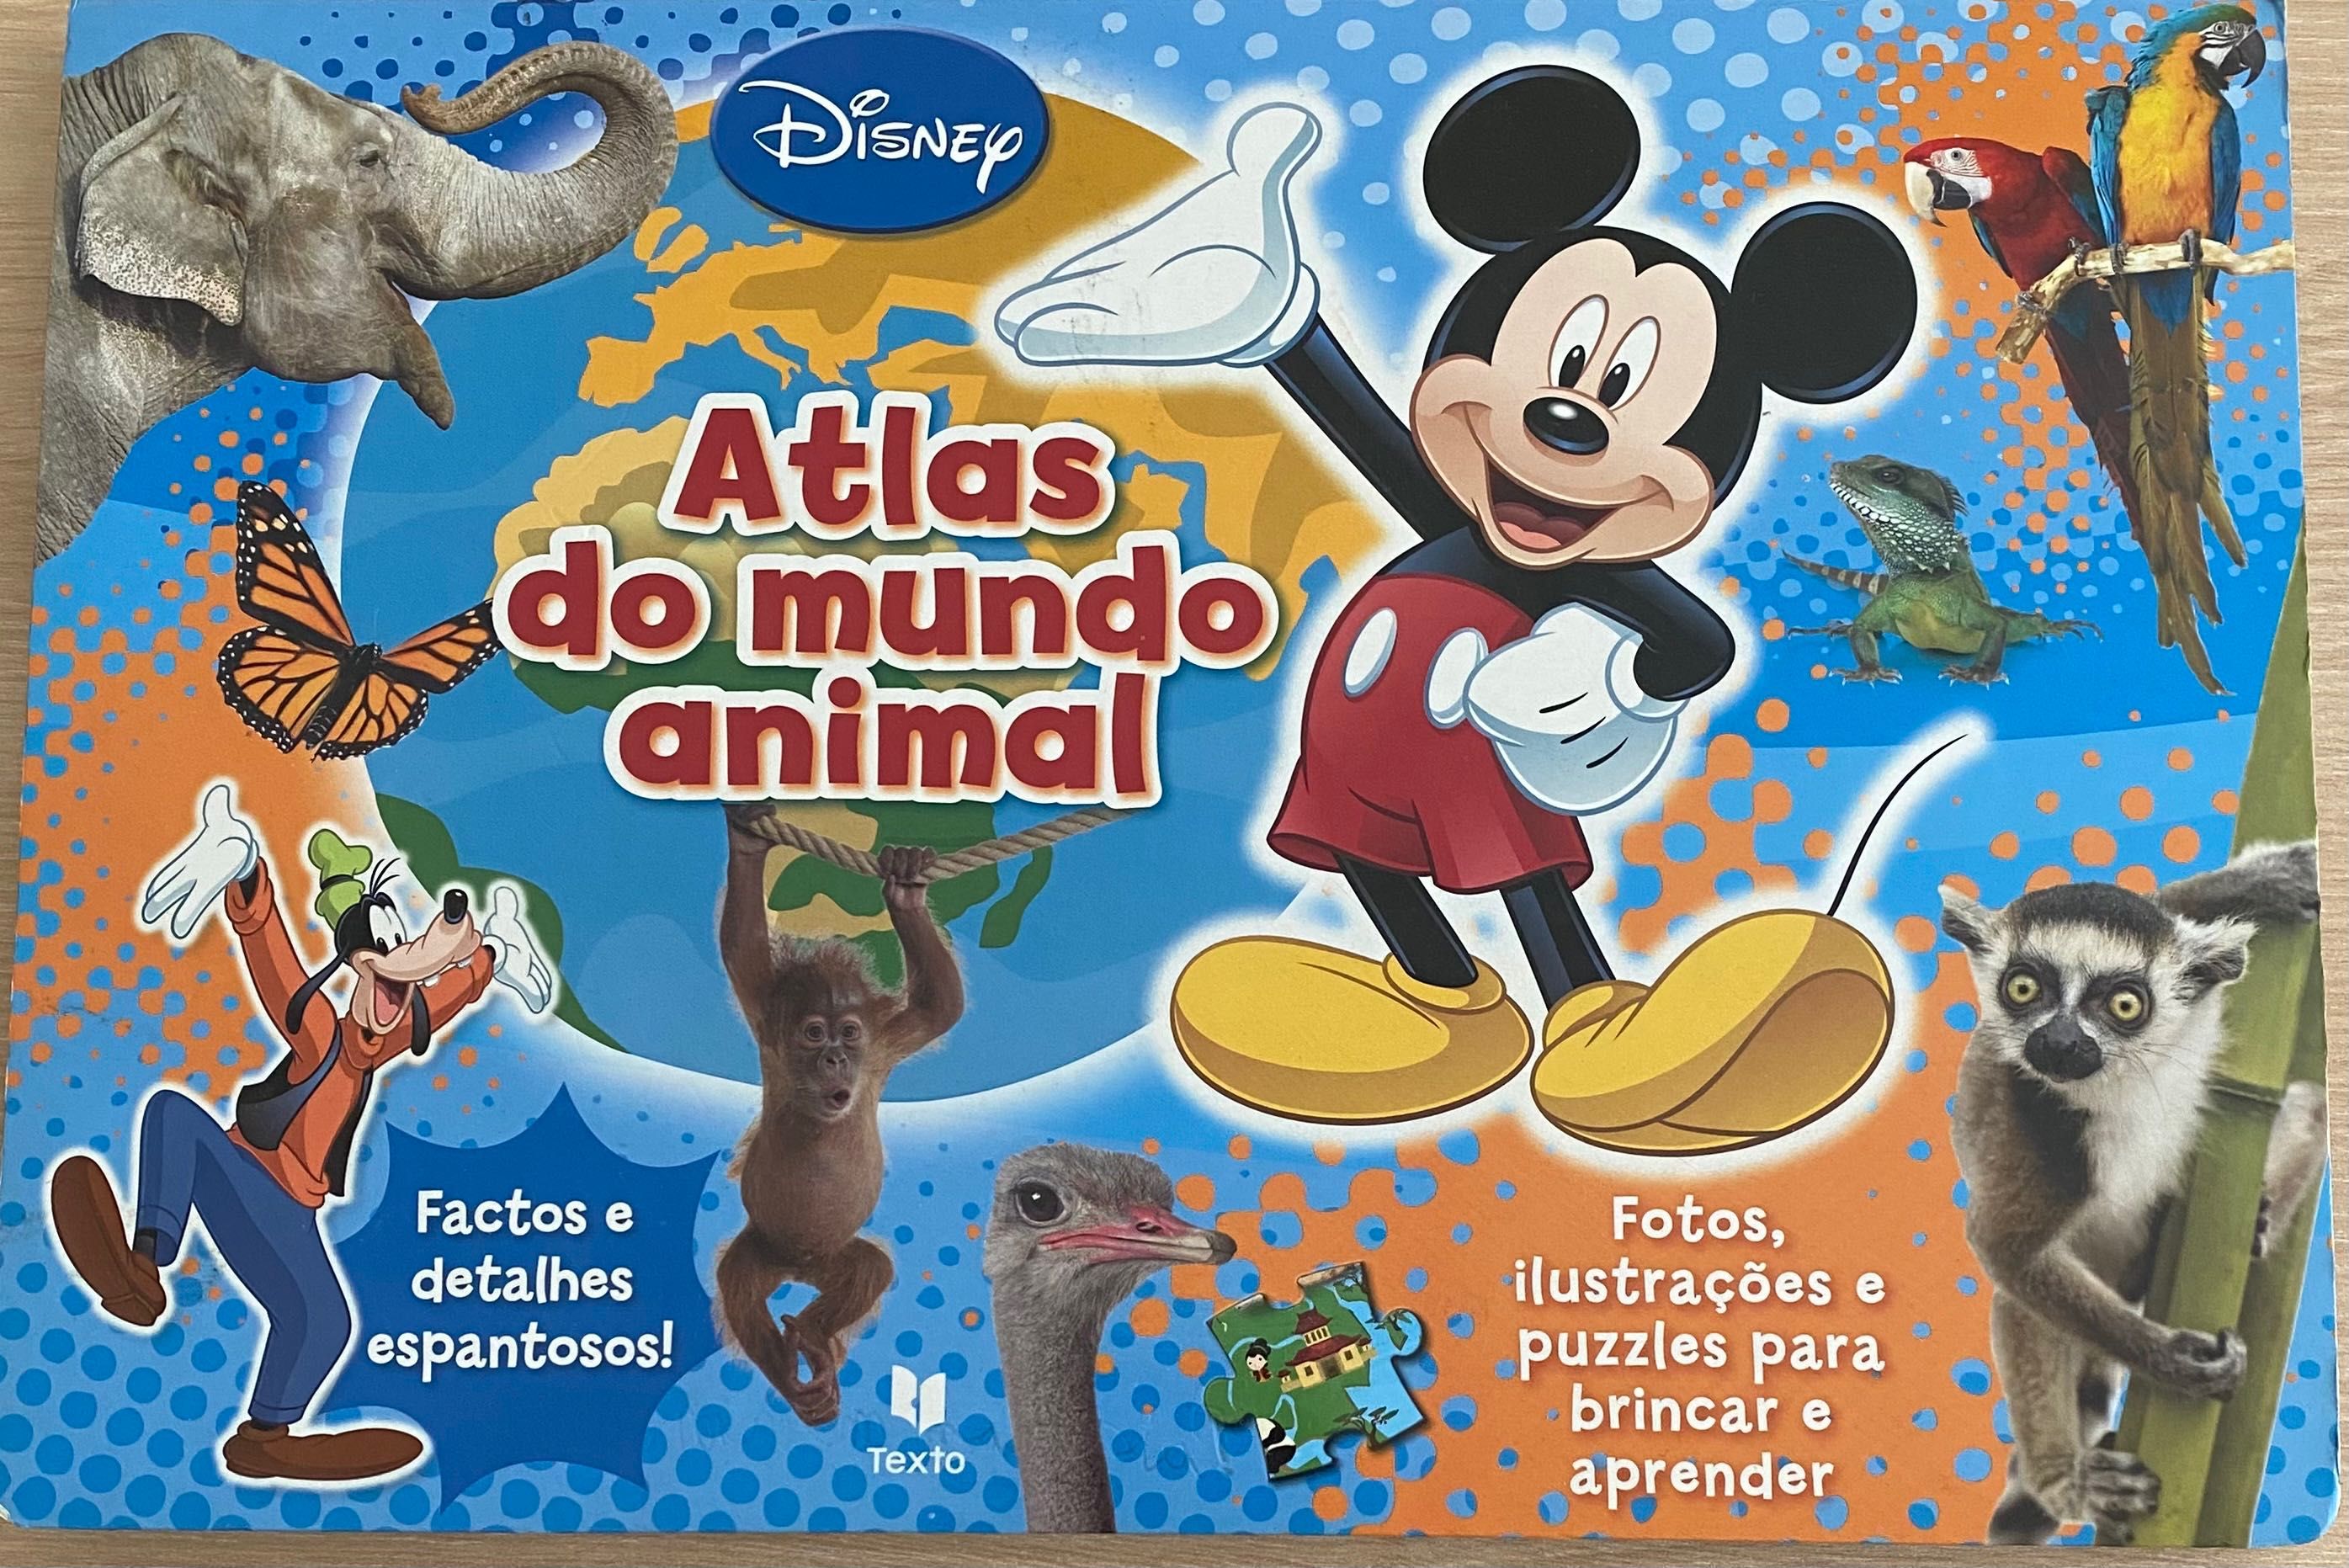 Atlas do mundo animal Disney + puzzles